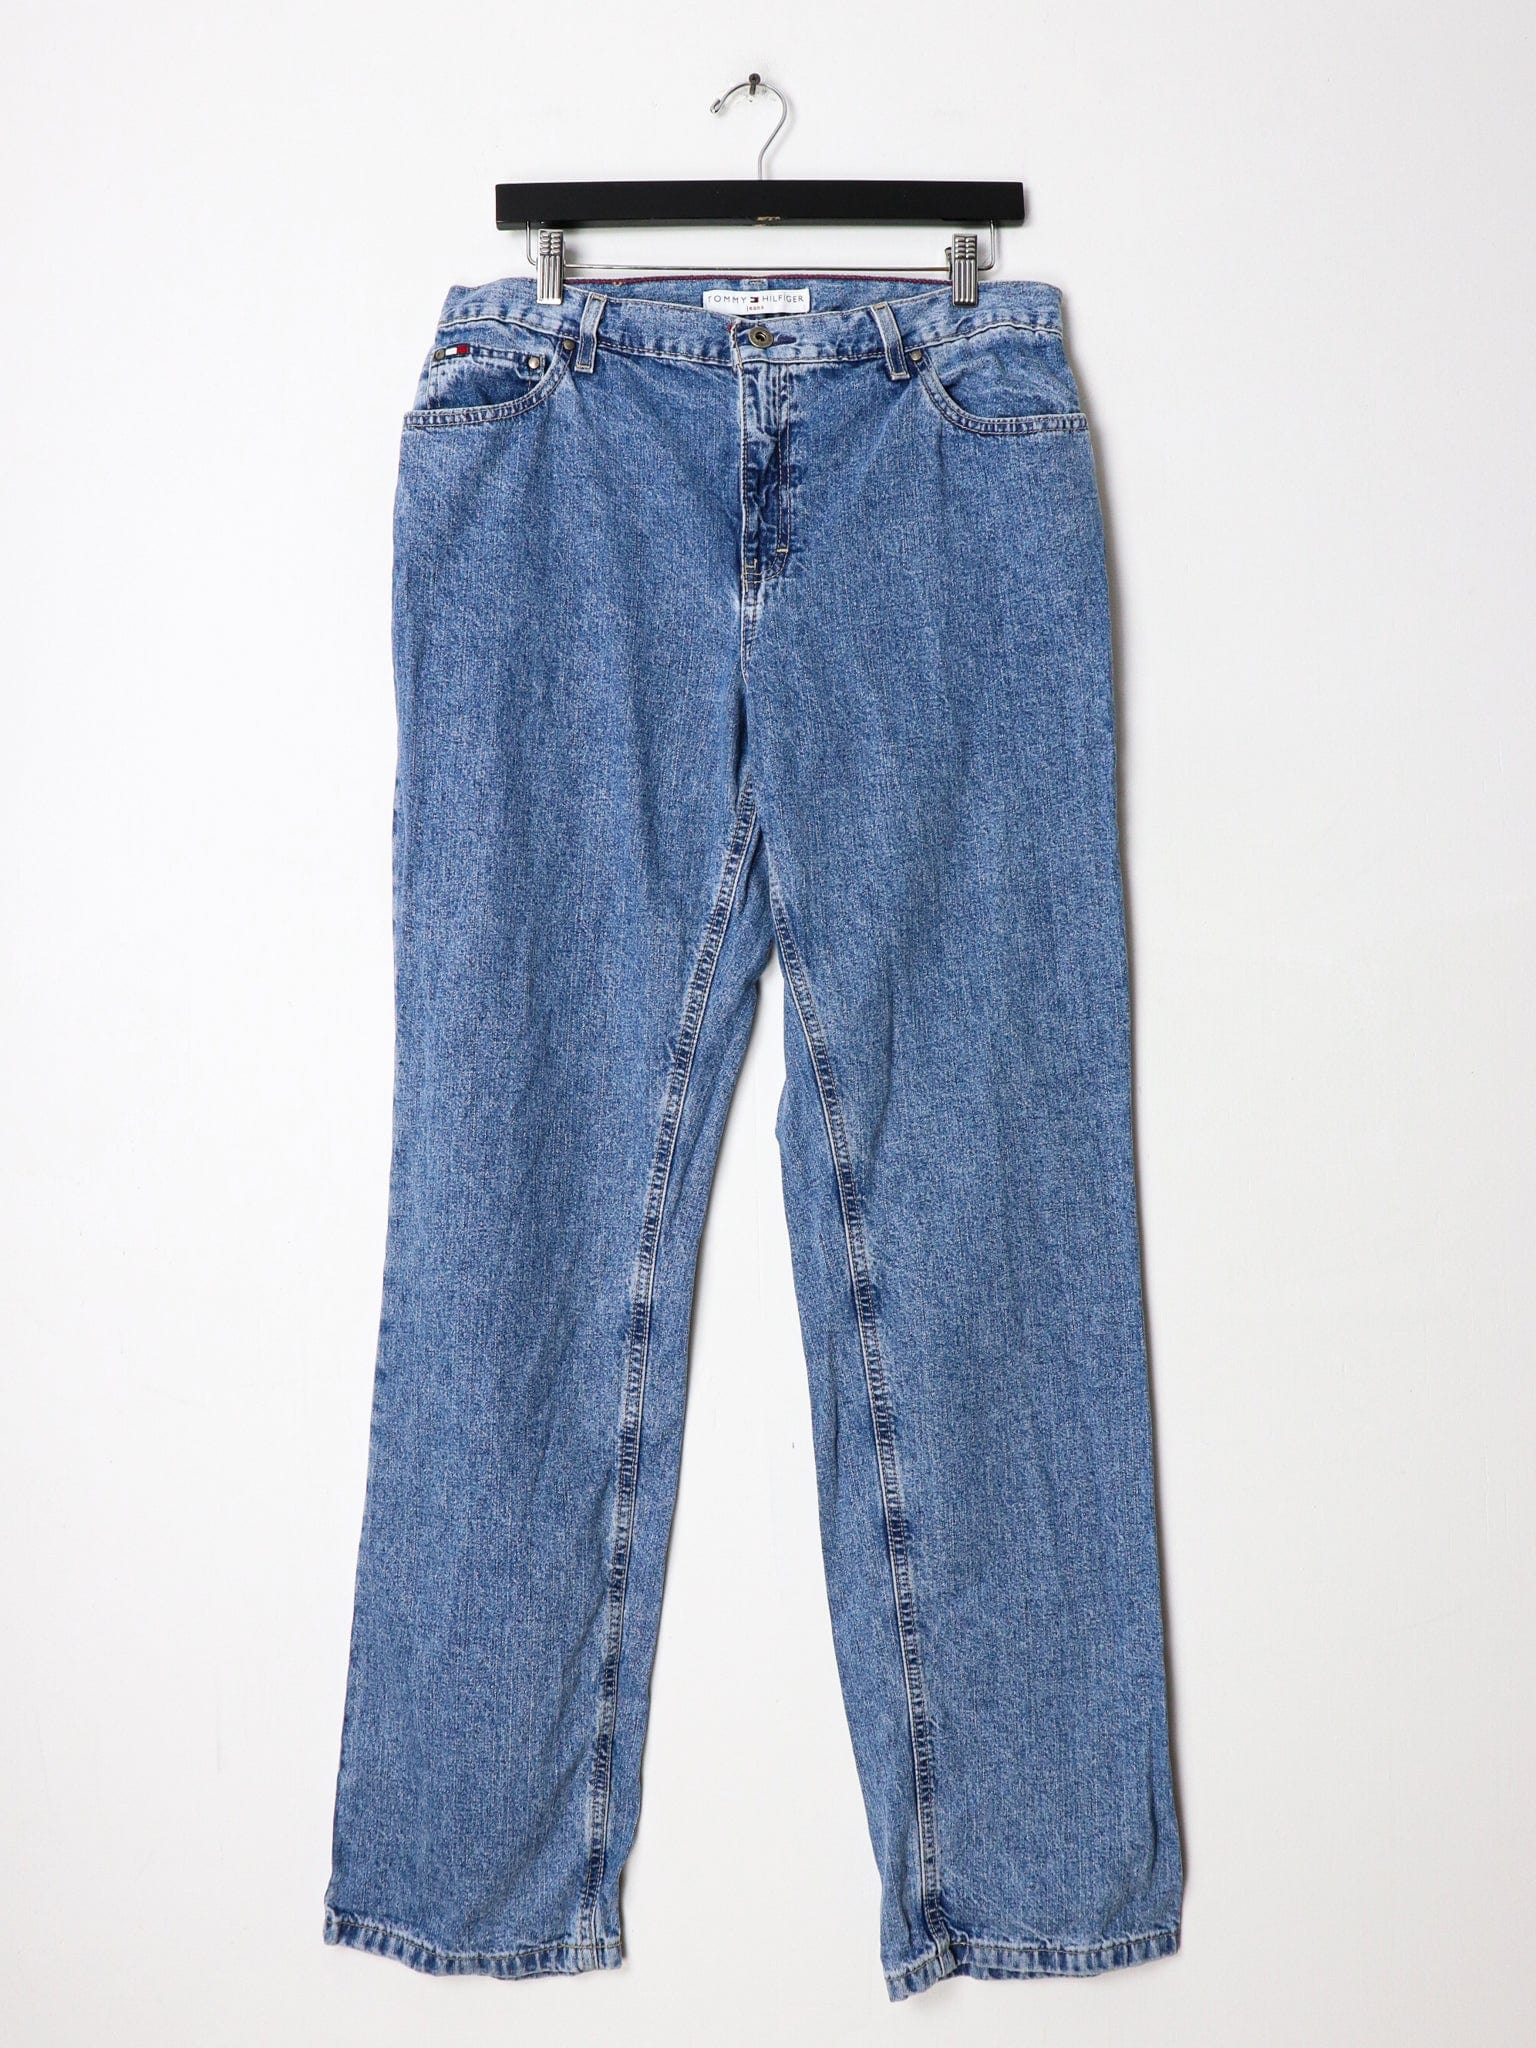 https://propervintagecanada.com/cdn/shop/products/tommy-hilfiger-jeans-tommy-hilfiger-denim-jeans-women-s-size-12-29956231823419.jpg?v=1655338671